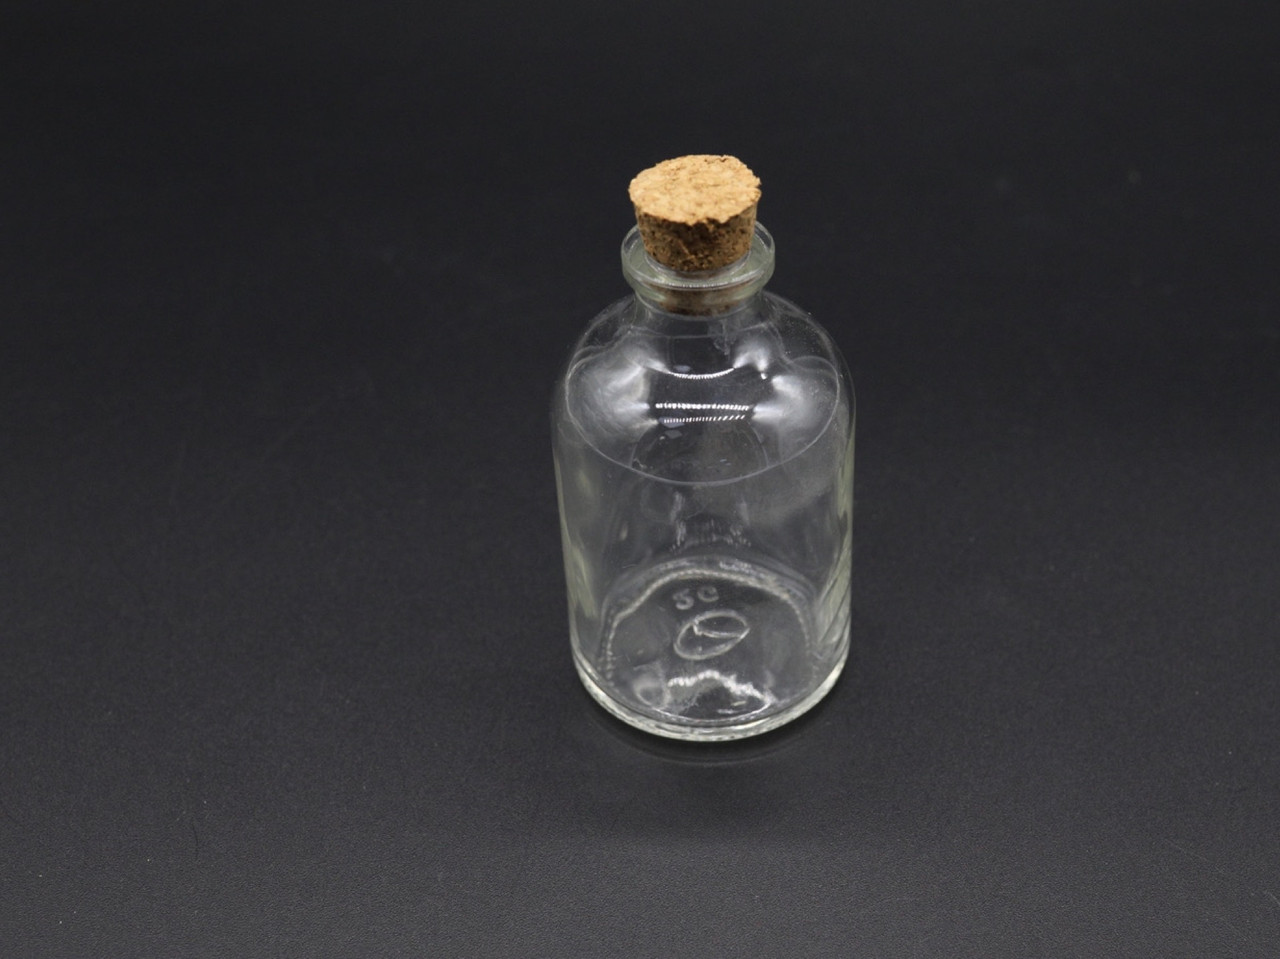 Стеклянная бутылочка с корком, 42х73 мм, 60 мл